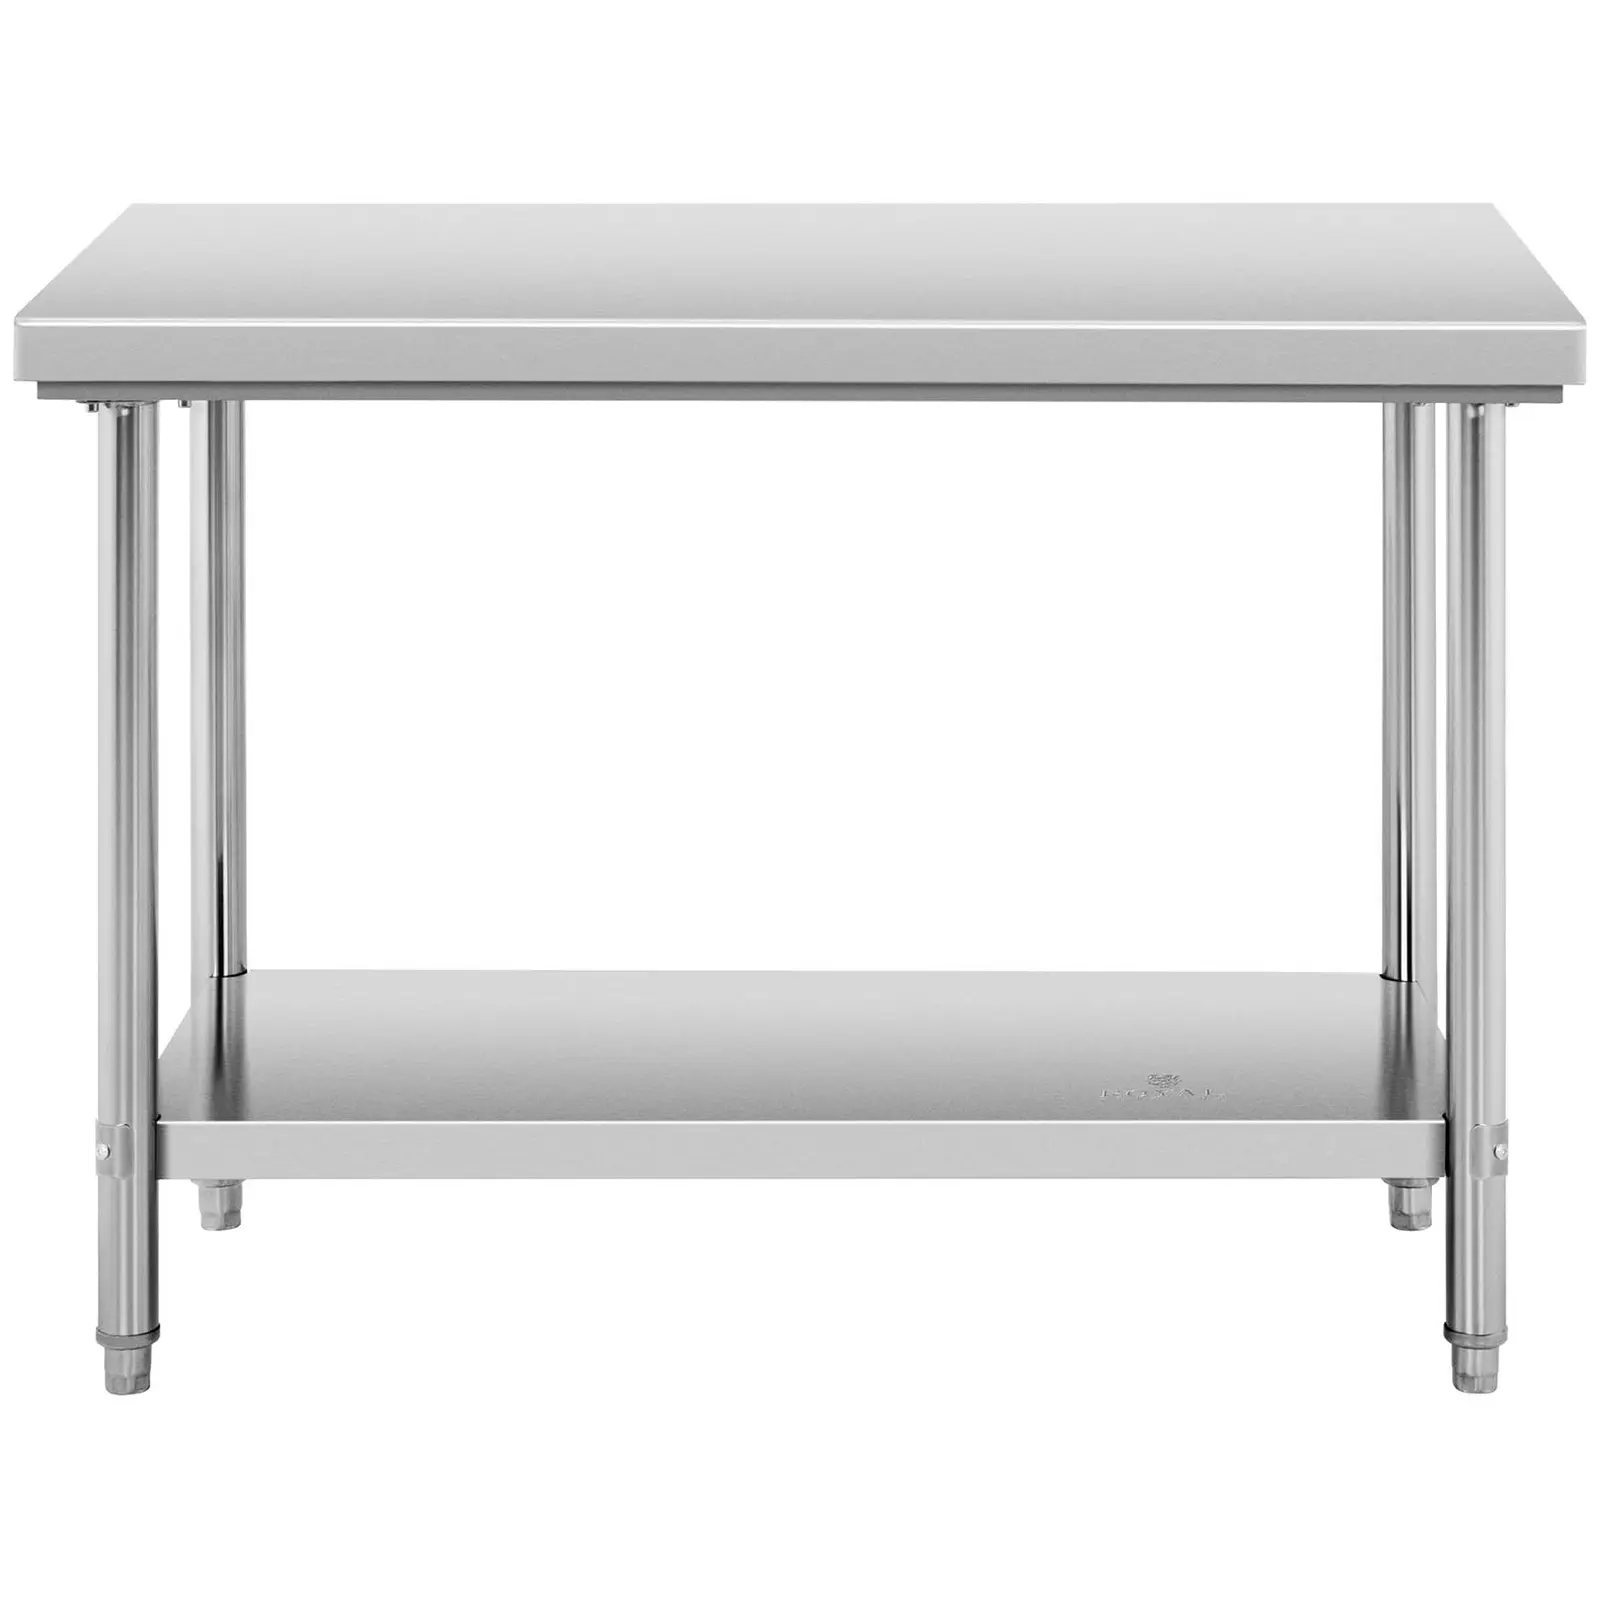 Pracovný stôl z nehrdzavejúcej ocele - 120 x 70 cm - nosnosť 196 kg